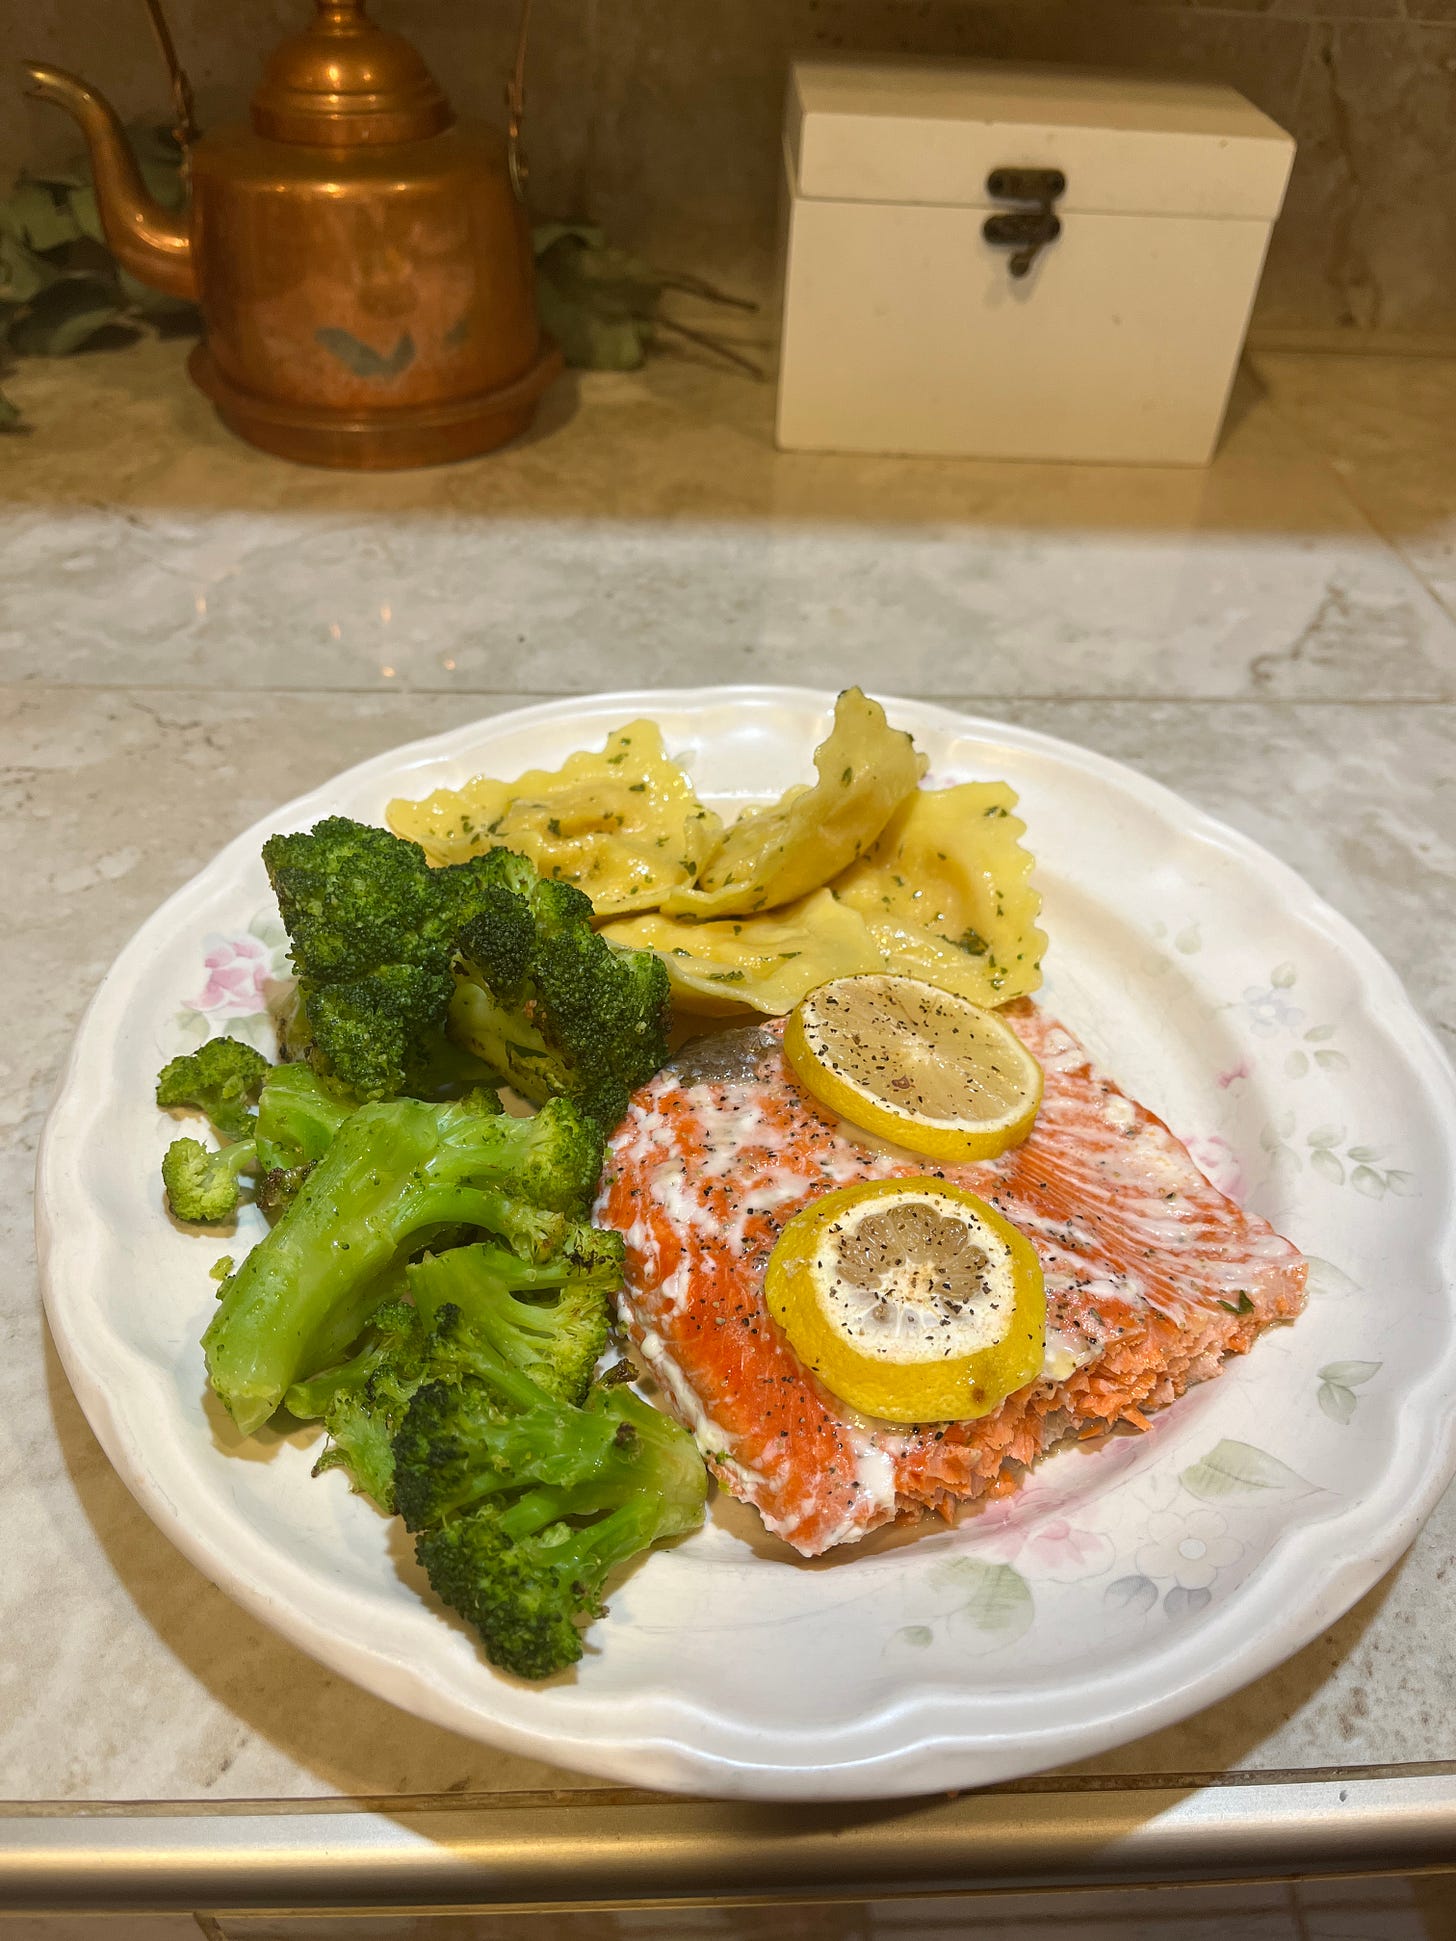 Healthy plate of salmon with lemon slices, broccoli, and ravioli